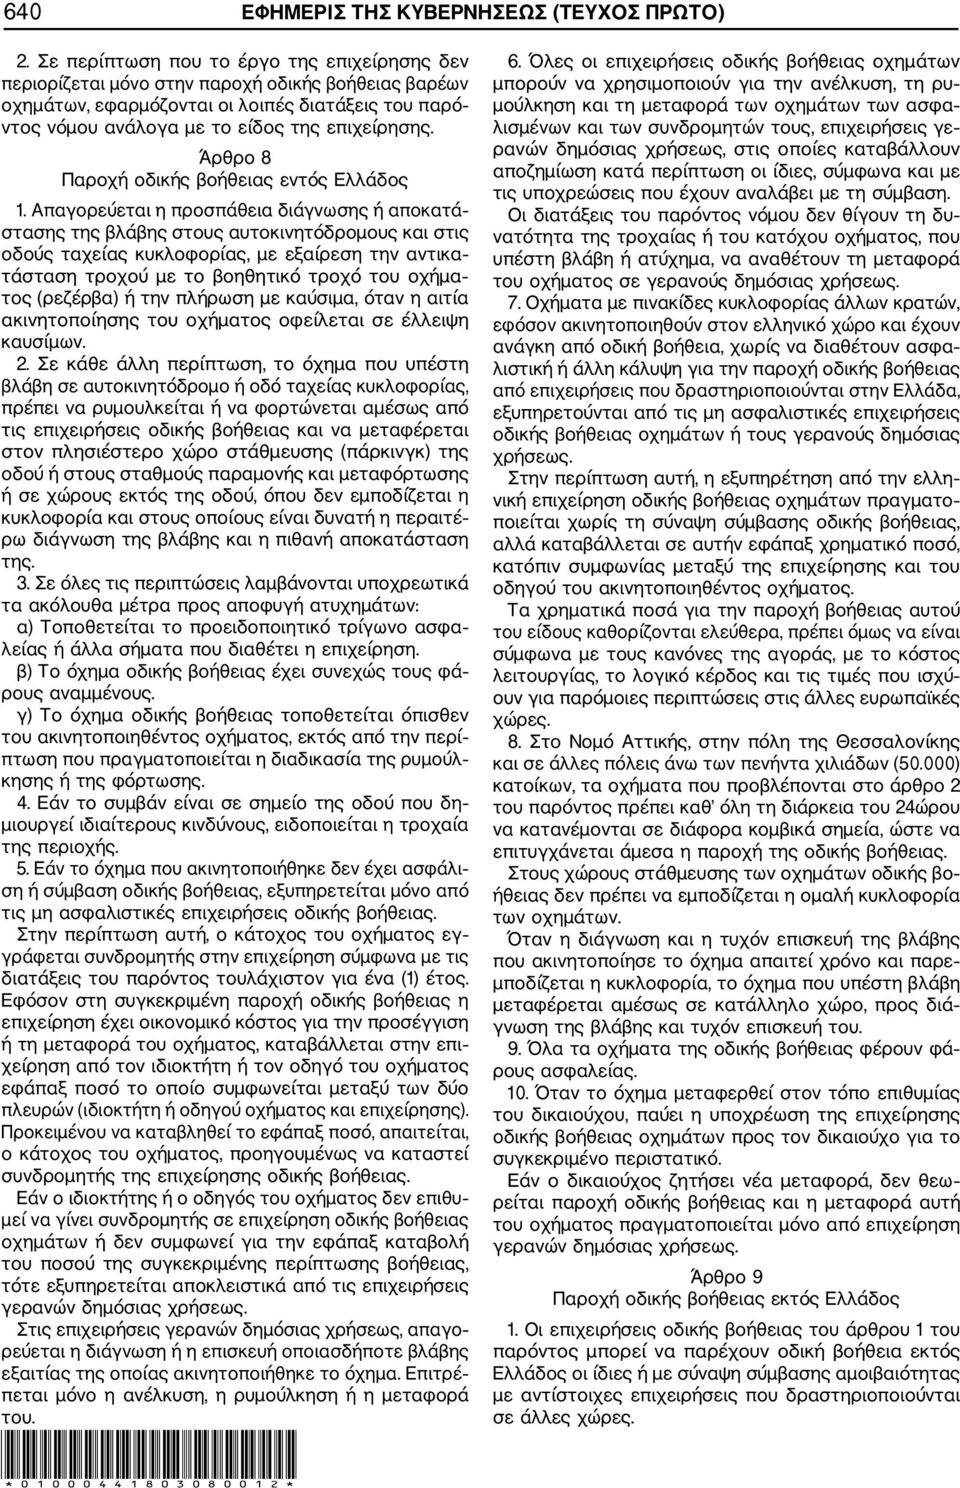 Άρθρο 8 Παροχή οδικής βοήθειας εντός Ελλάδος 1.